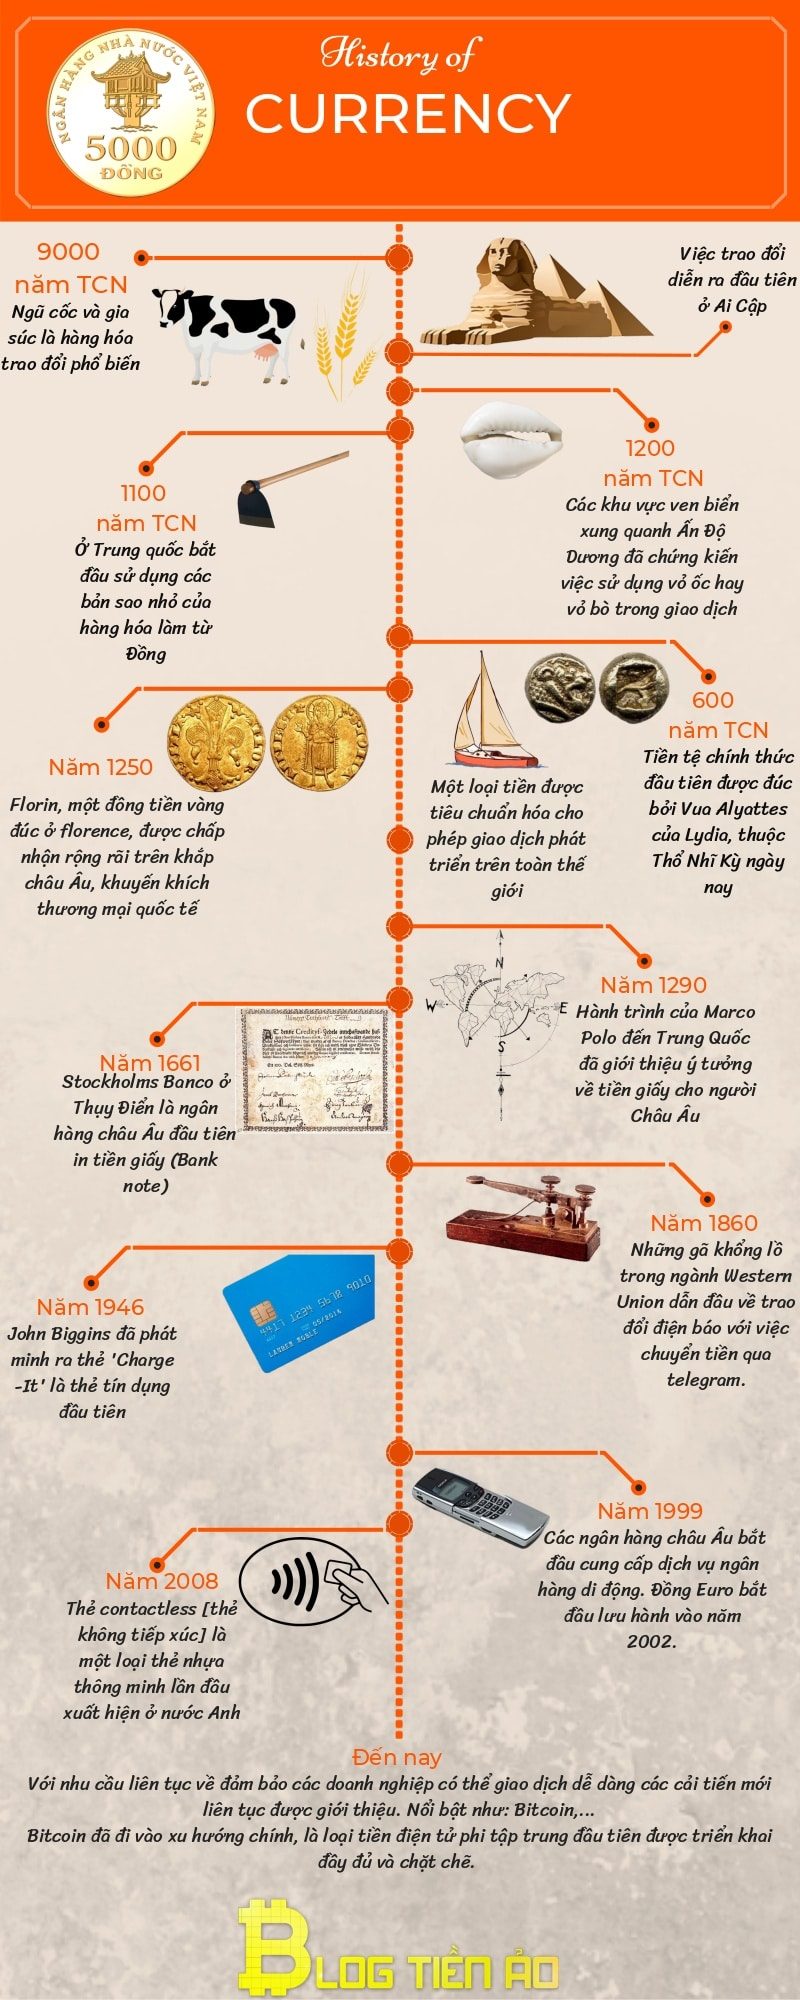 lịch sử hình thành và phát triển của tiền tệ 